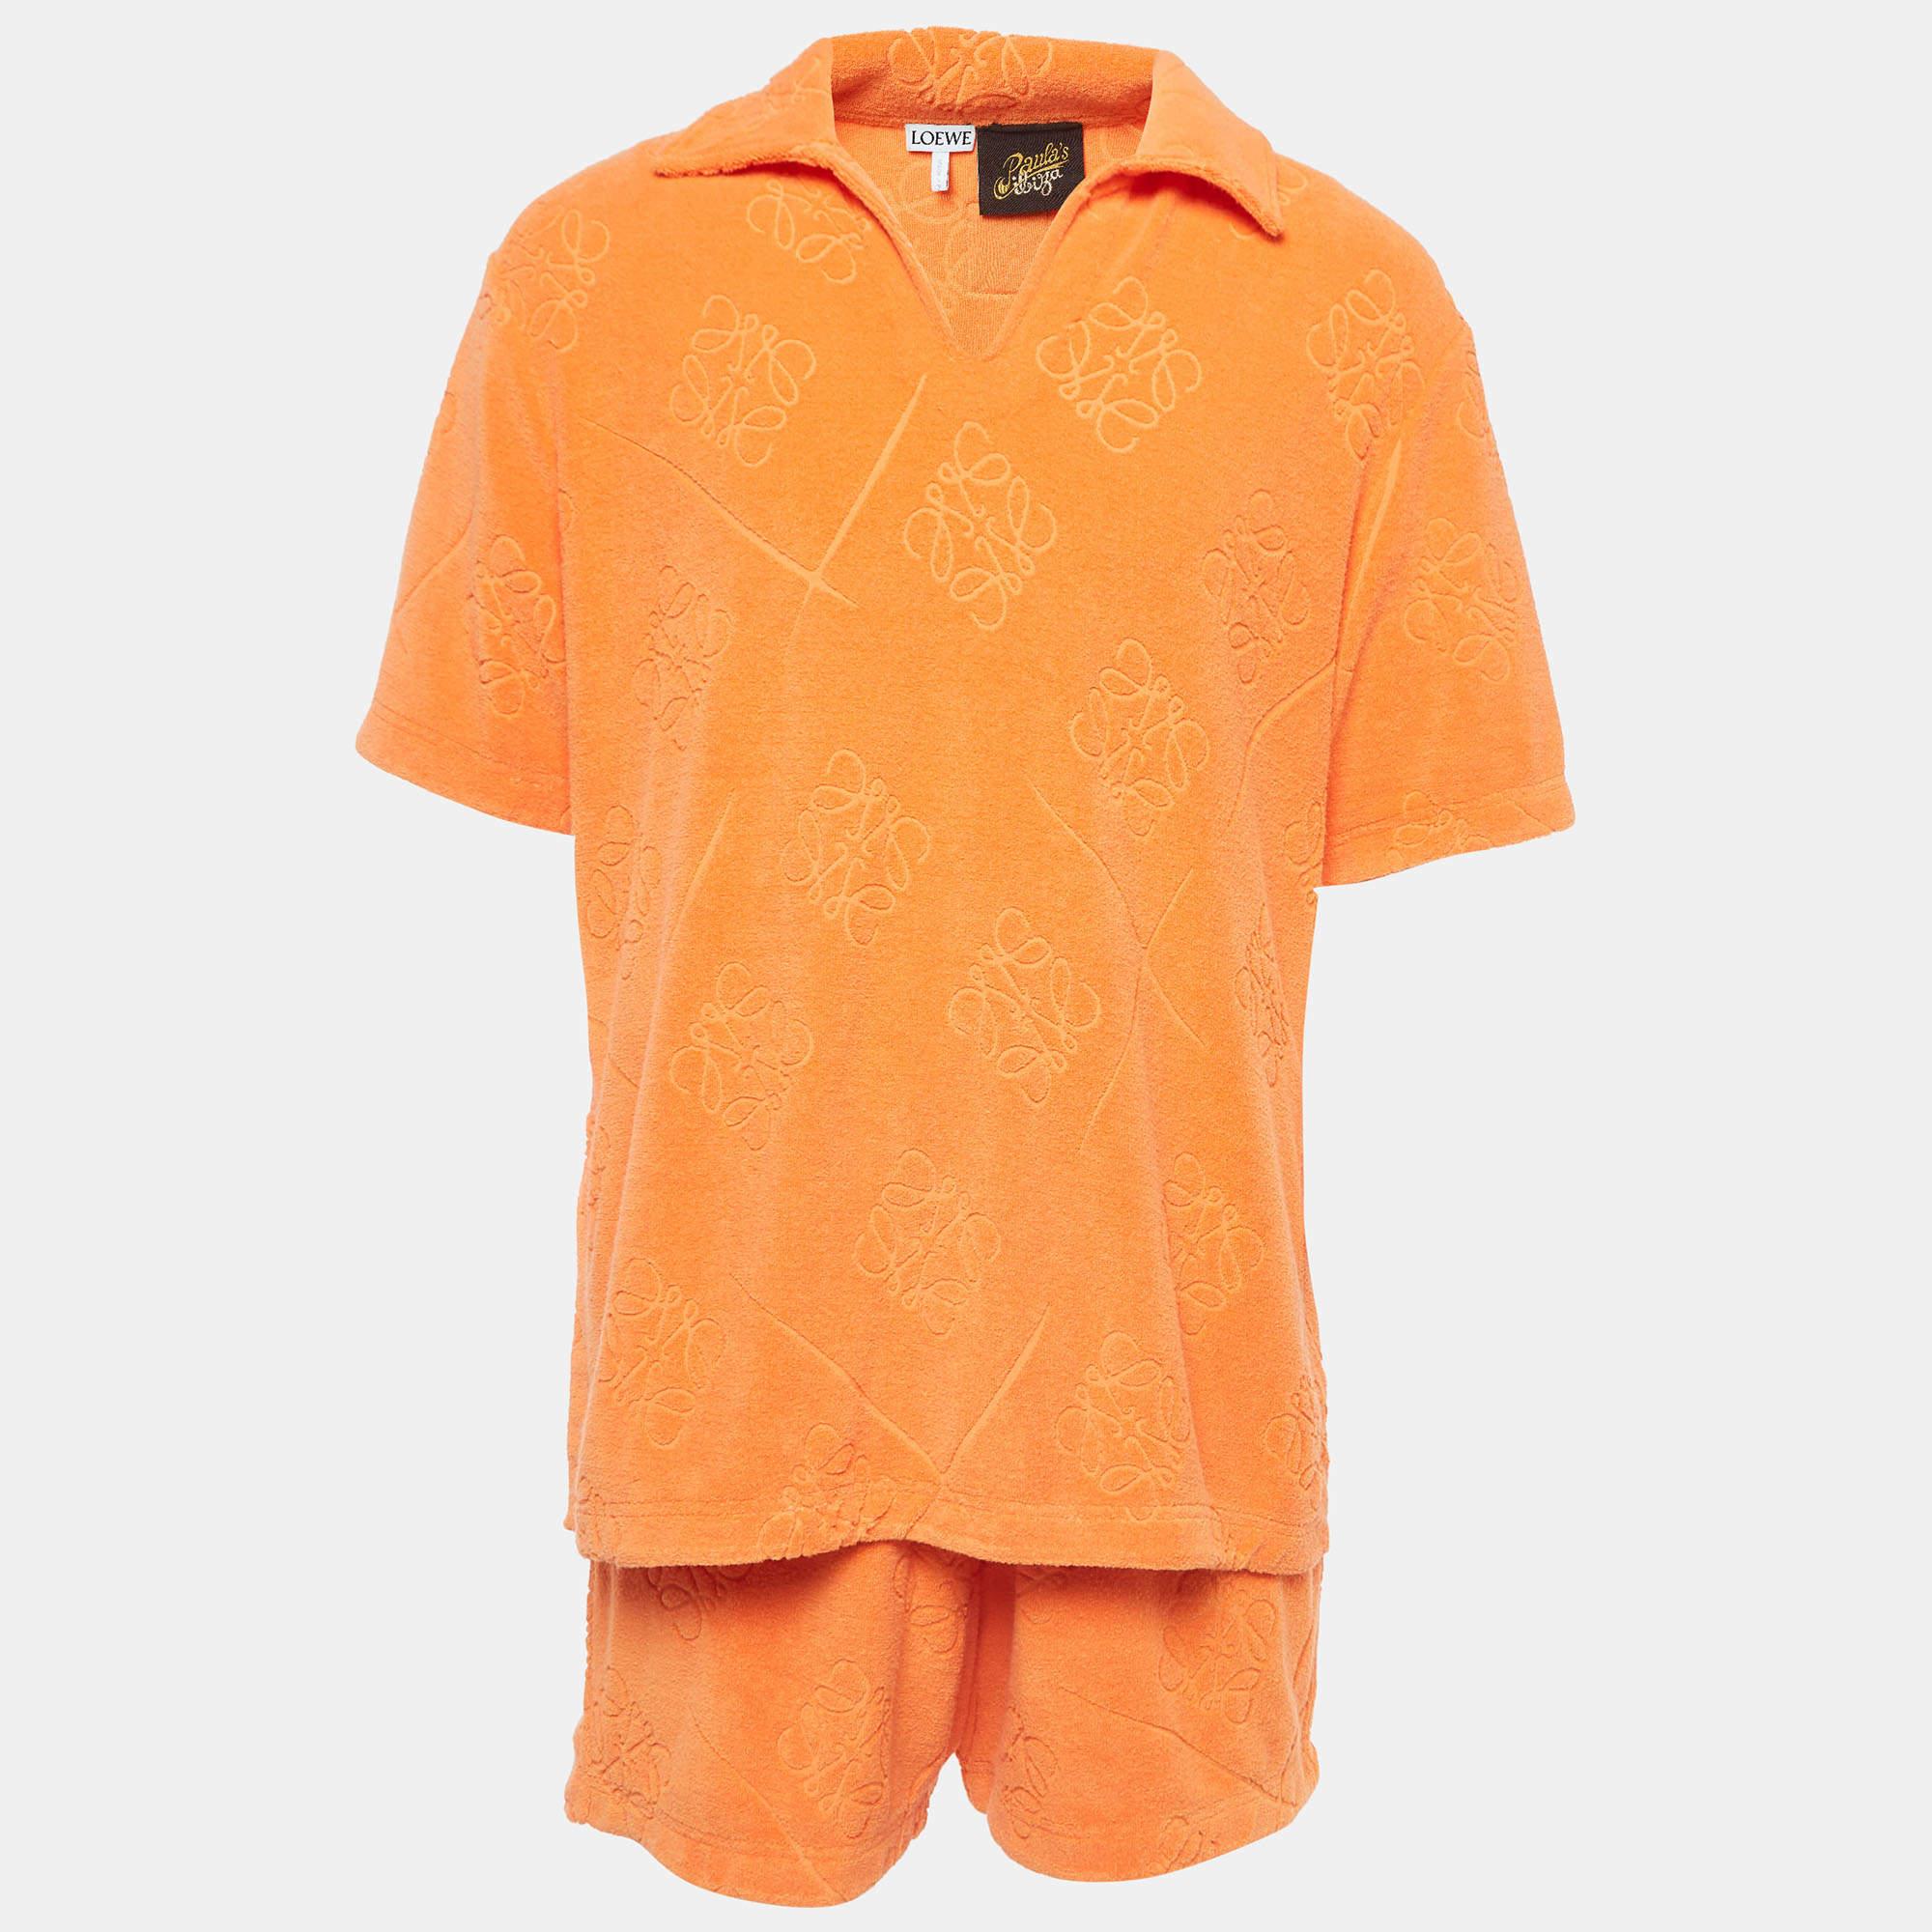 La collection Loewe x Paula Ibiza est conçue avec des détails ludiques et des couleurs tendance. Confectionné en coton éponge, cet ensemble chemise et short présente un anagramme orange, des manches courtes et une silhouette décontractée.

